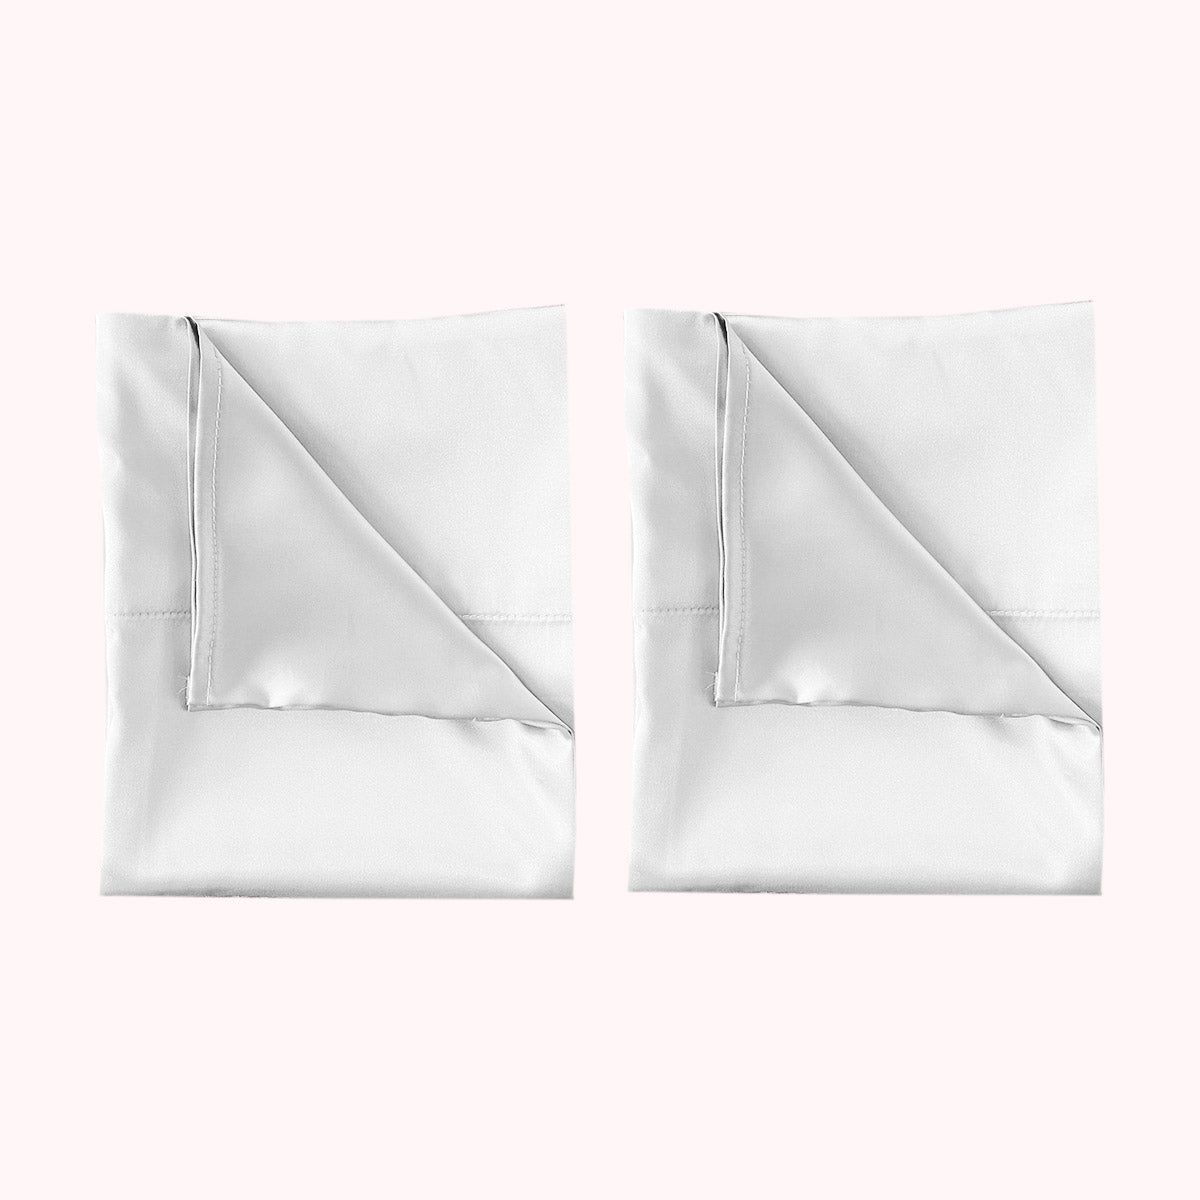 2 folded satin pillowcases in white